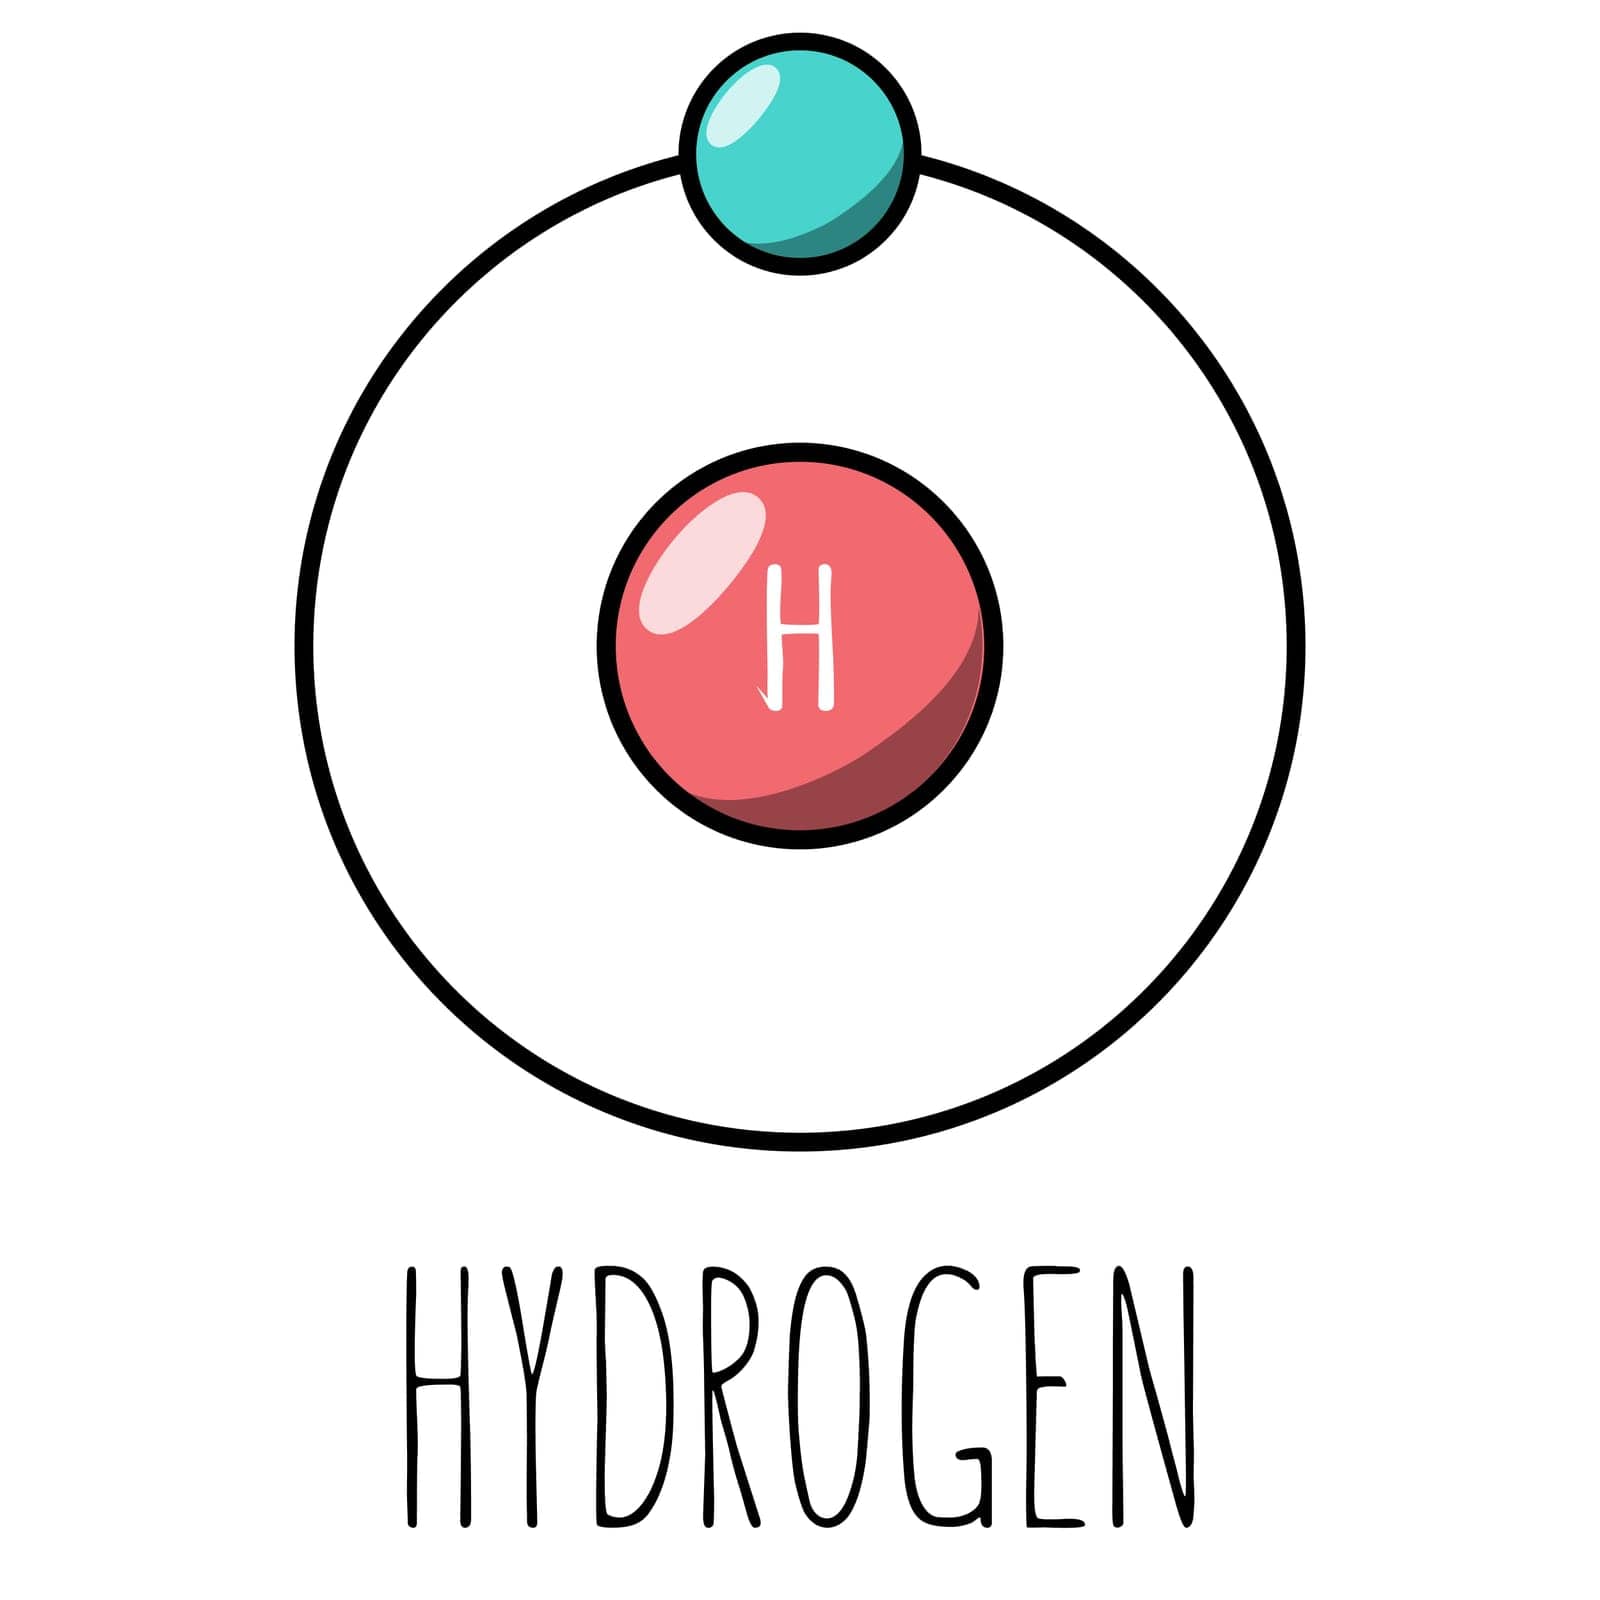 Hydrogen atom Bohr model by AnnaMarin